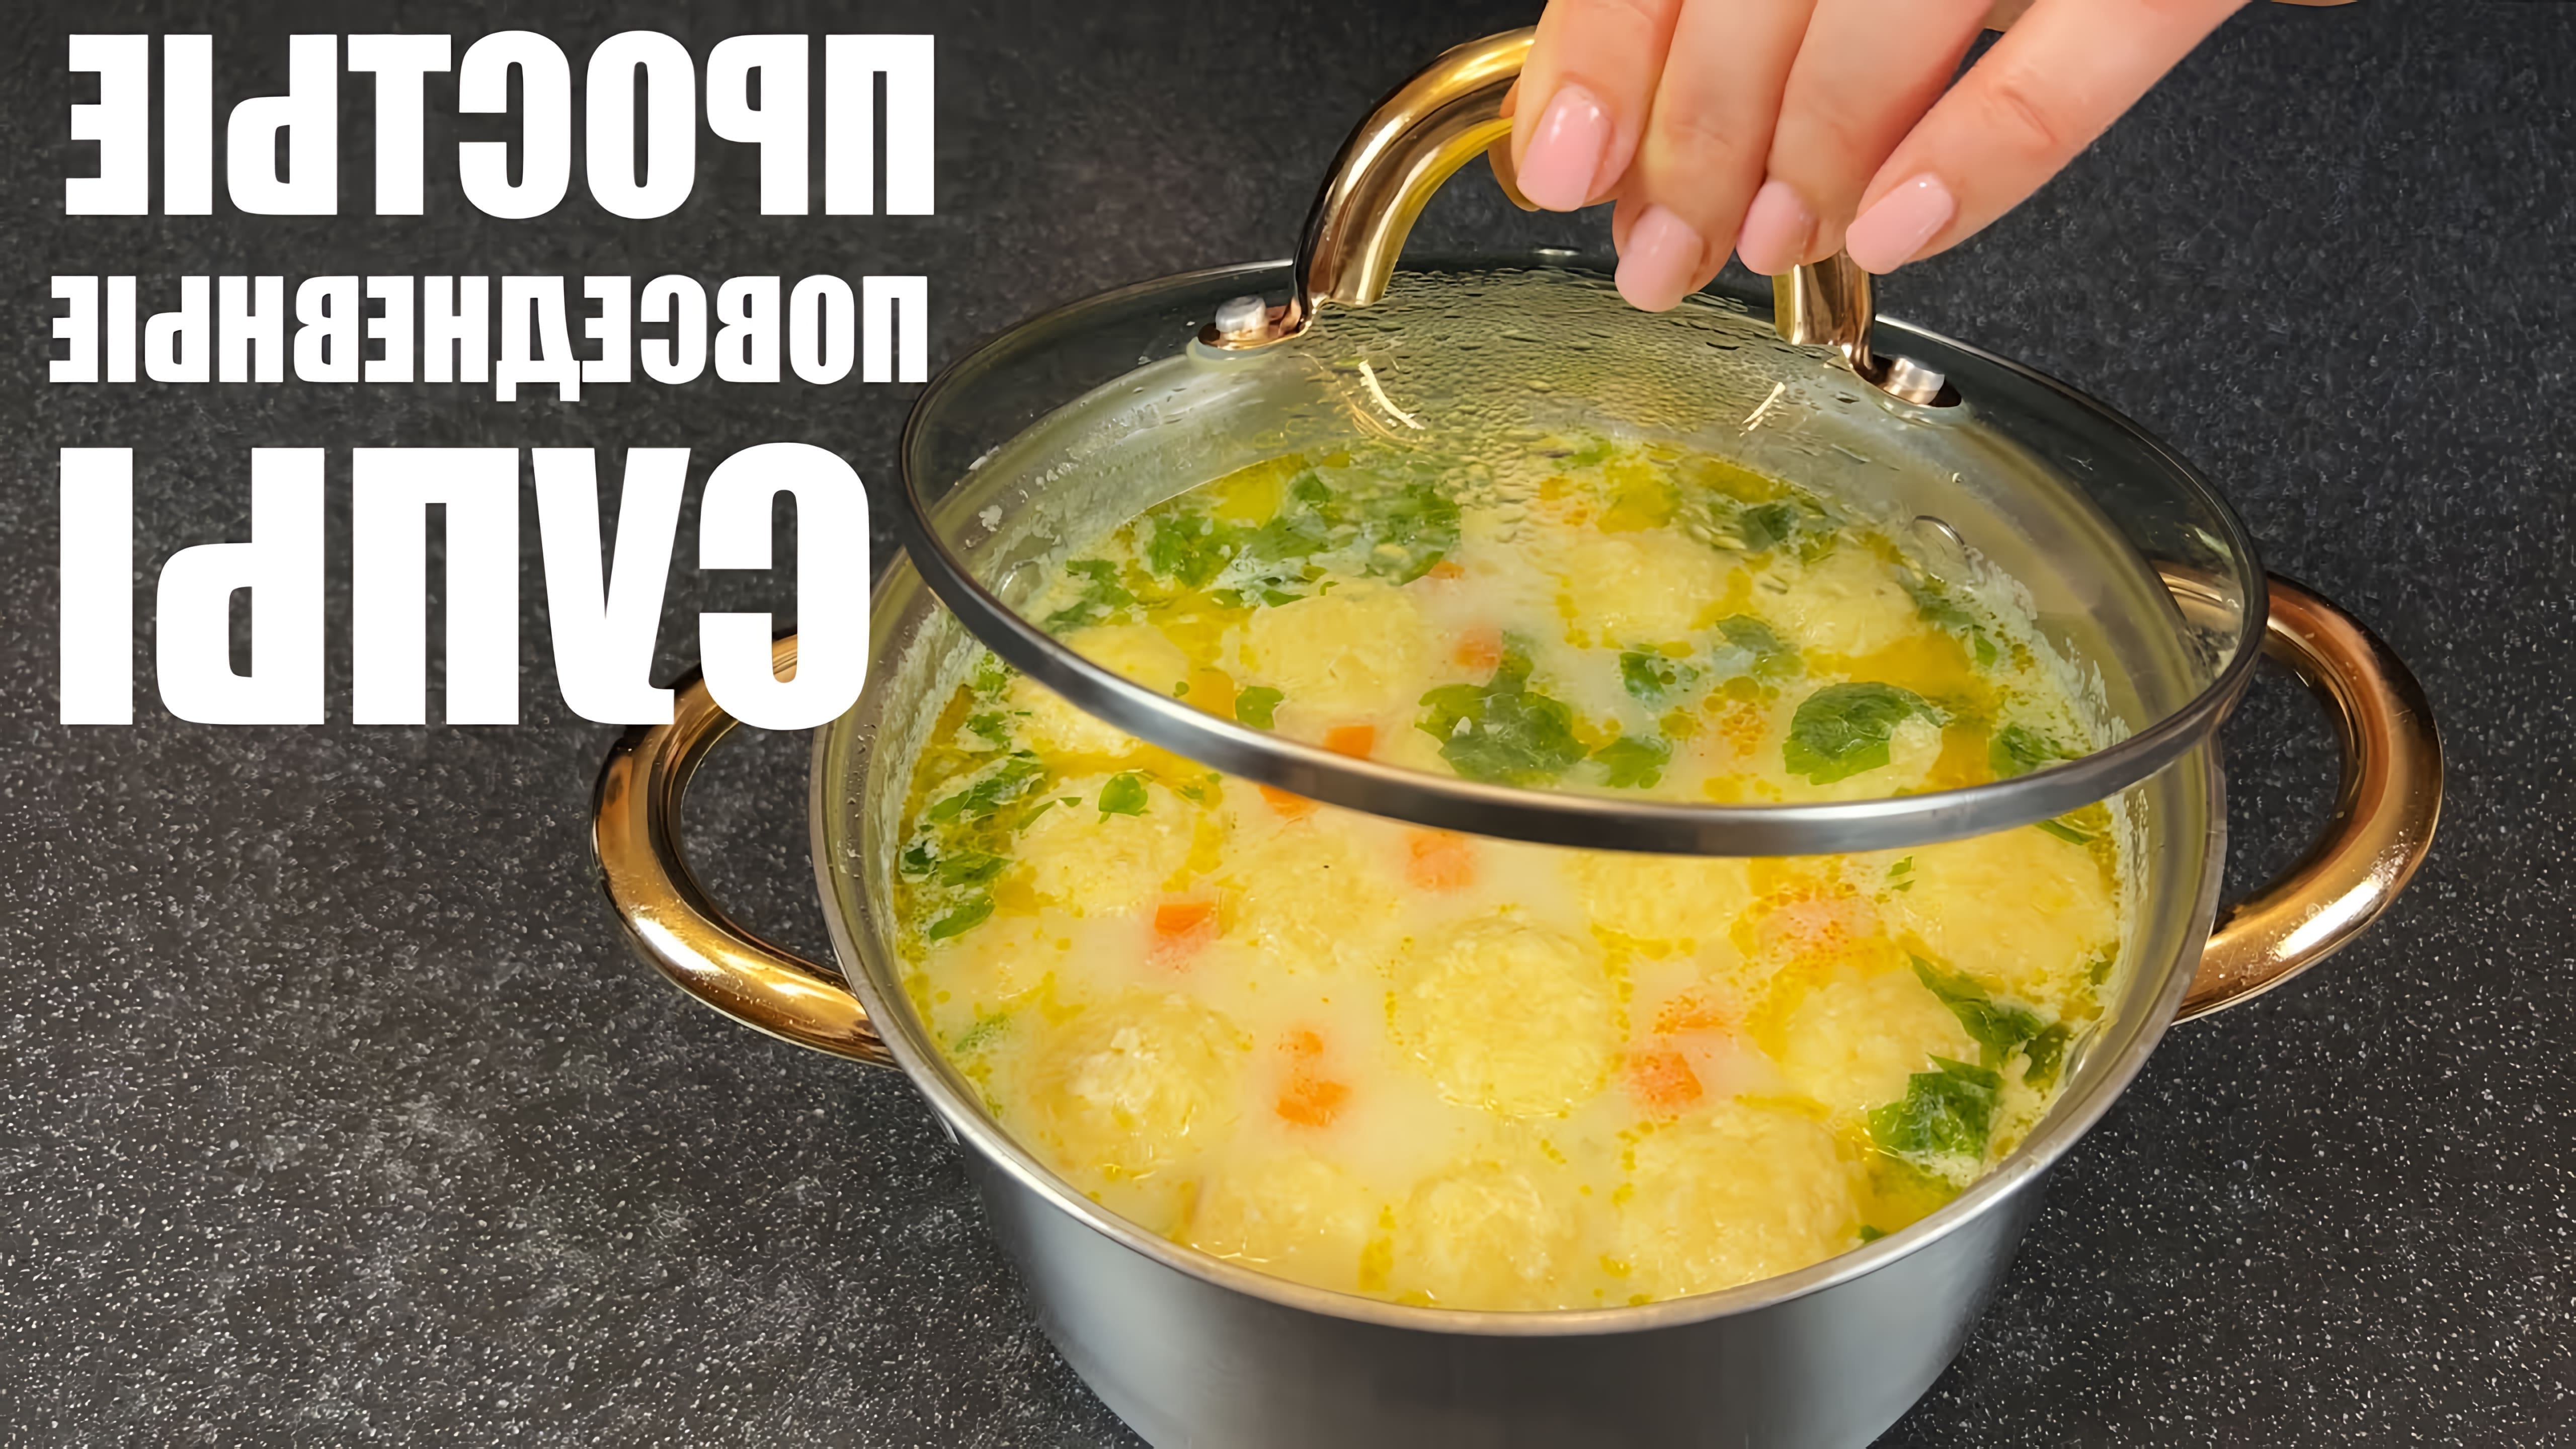 Видео представляет рецепты 6 простых супов, которые можно готовить ежедневно - томатный суп с колбасой, овощной суп, грибной суп, сырный суп, мясной суп и рыбный суп